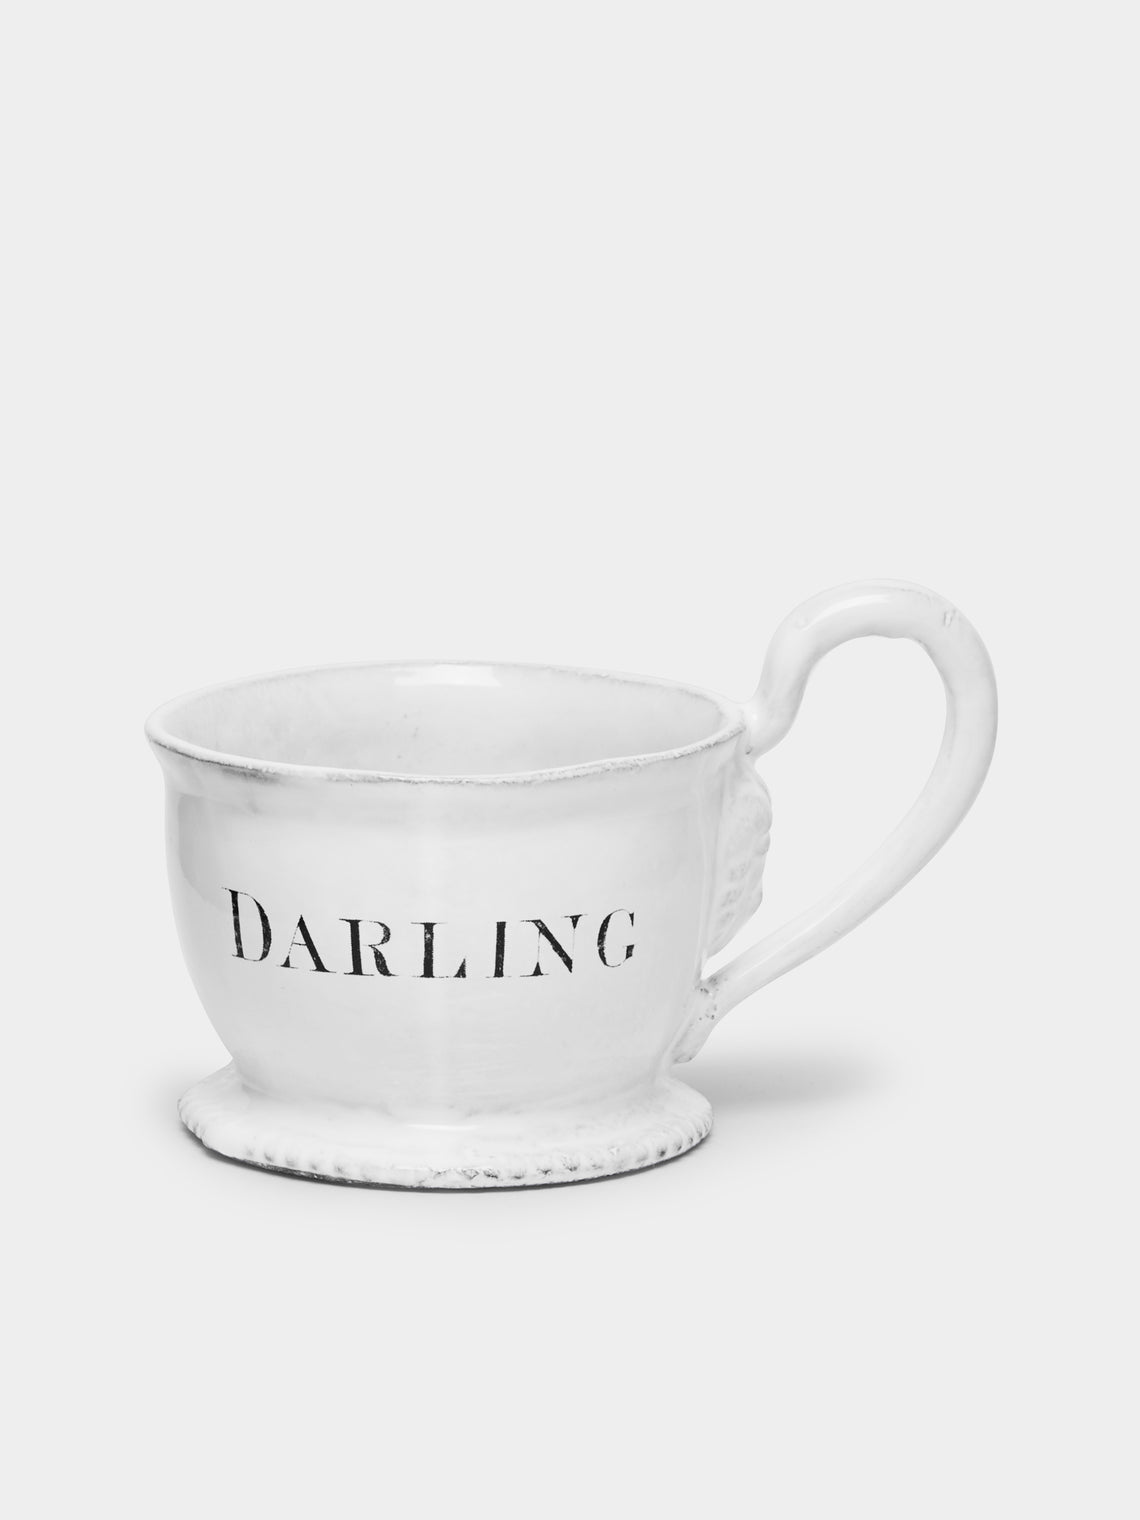 Astier de Villatte - Darling Espresso Cup -  - ABASK - 